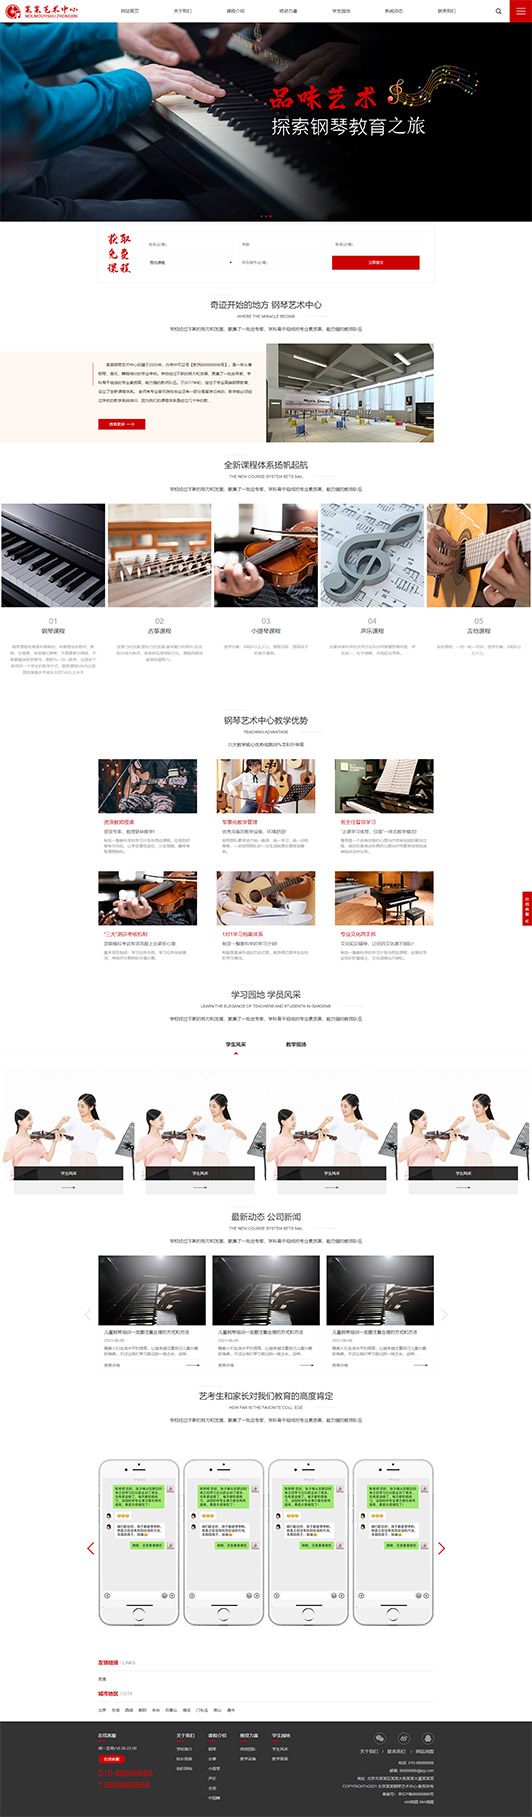 大同钢琴艺术培训公司响应式企业网站